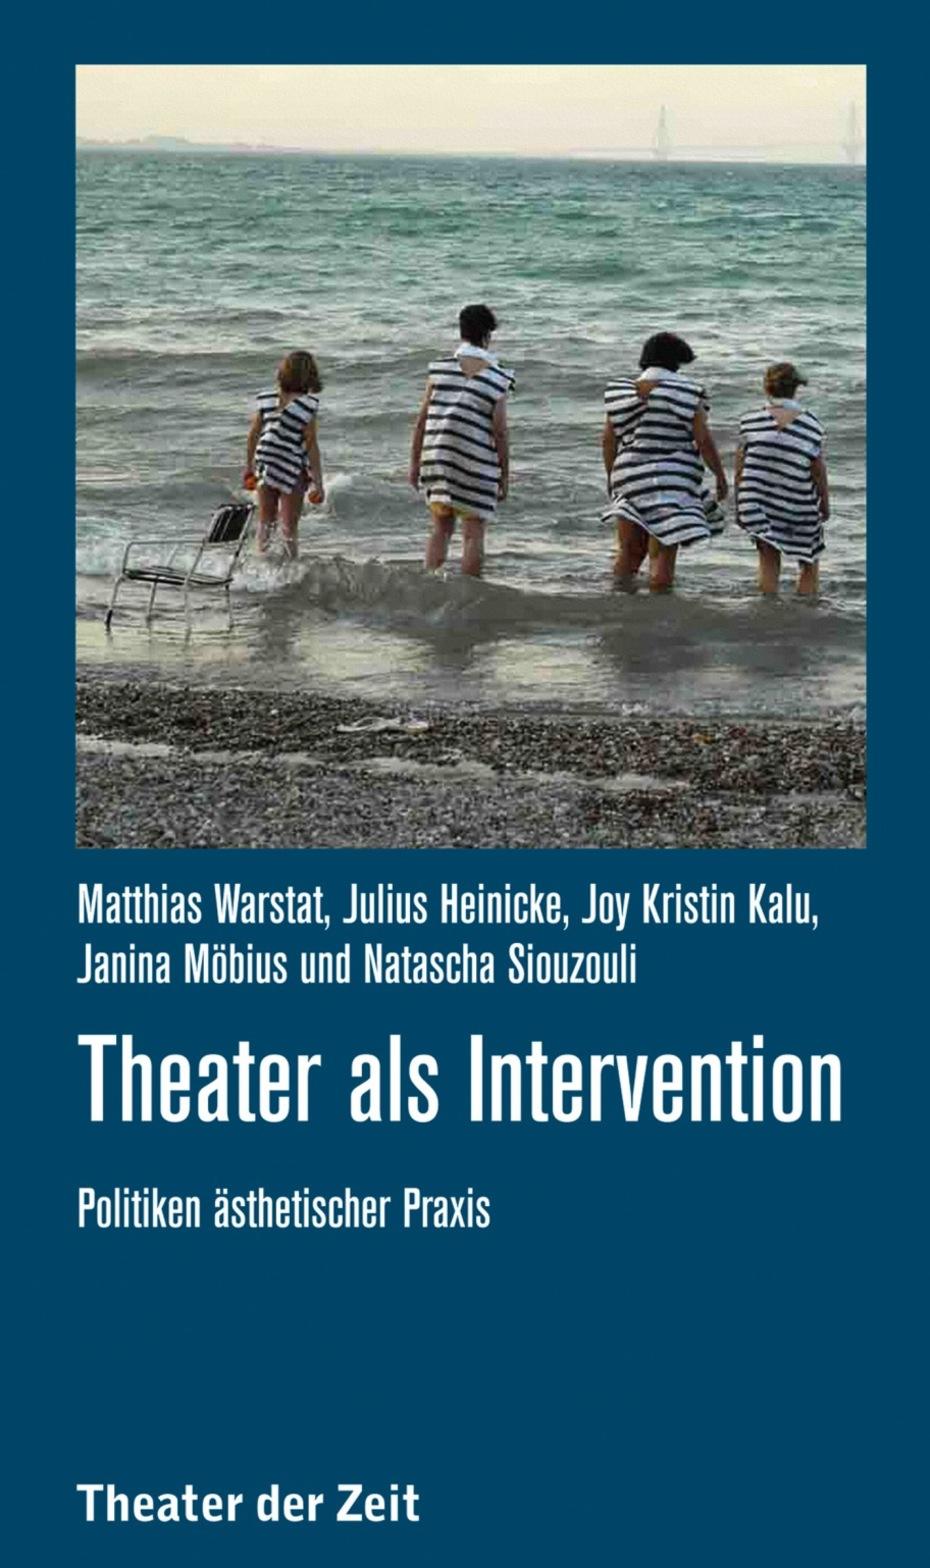 "Theater als Intervention"